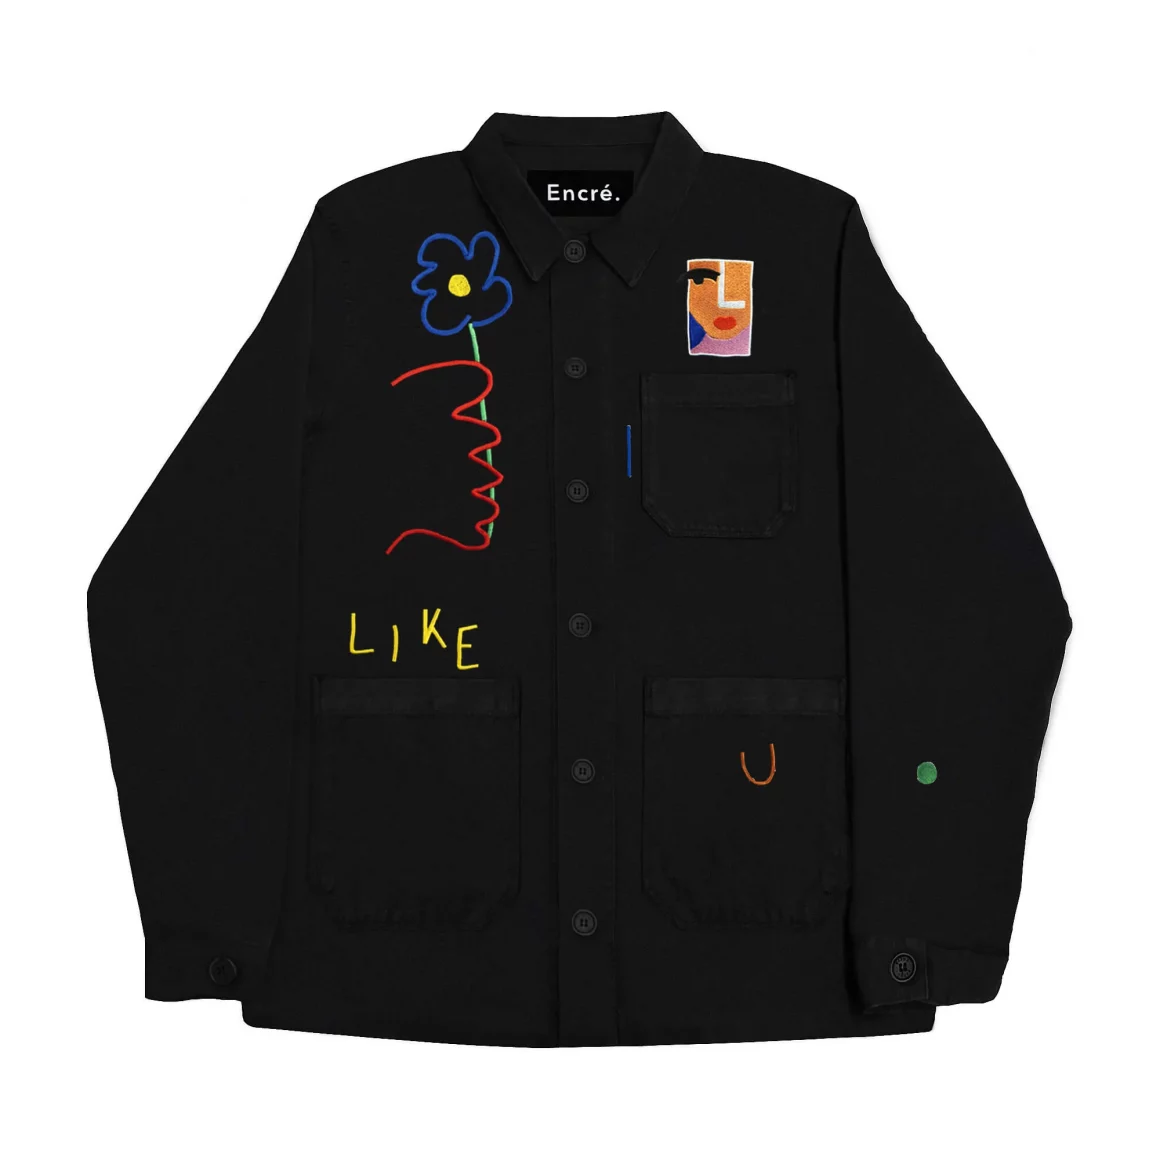 Jacket "I like u" 